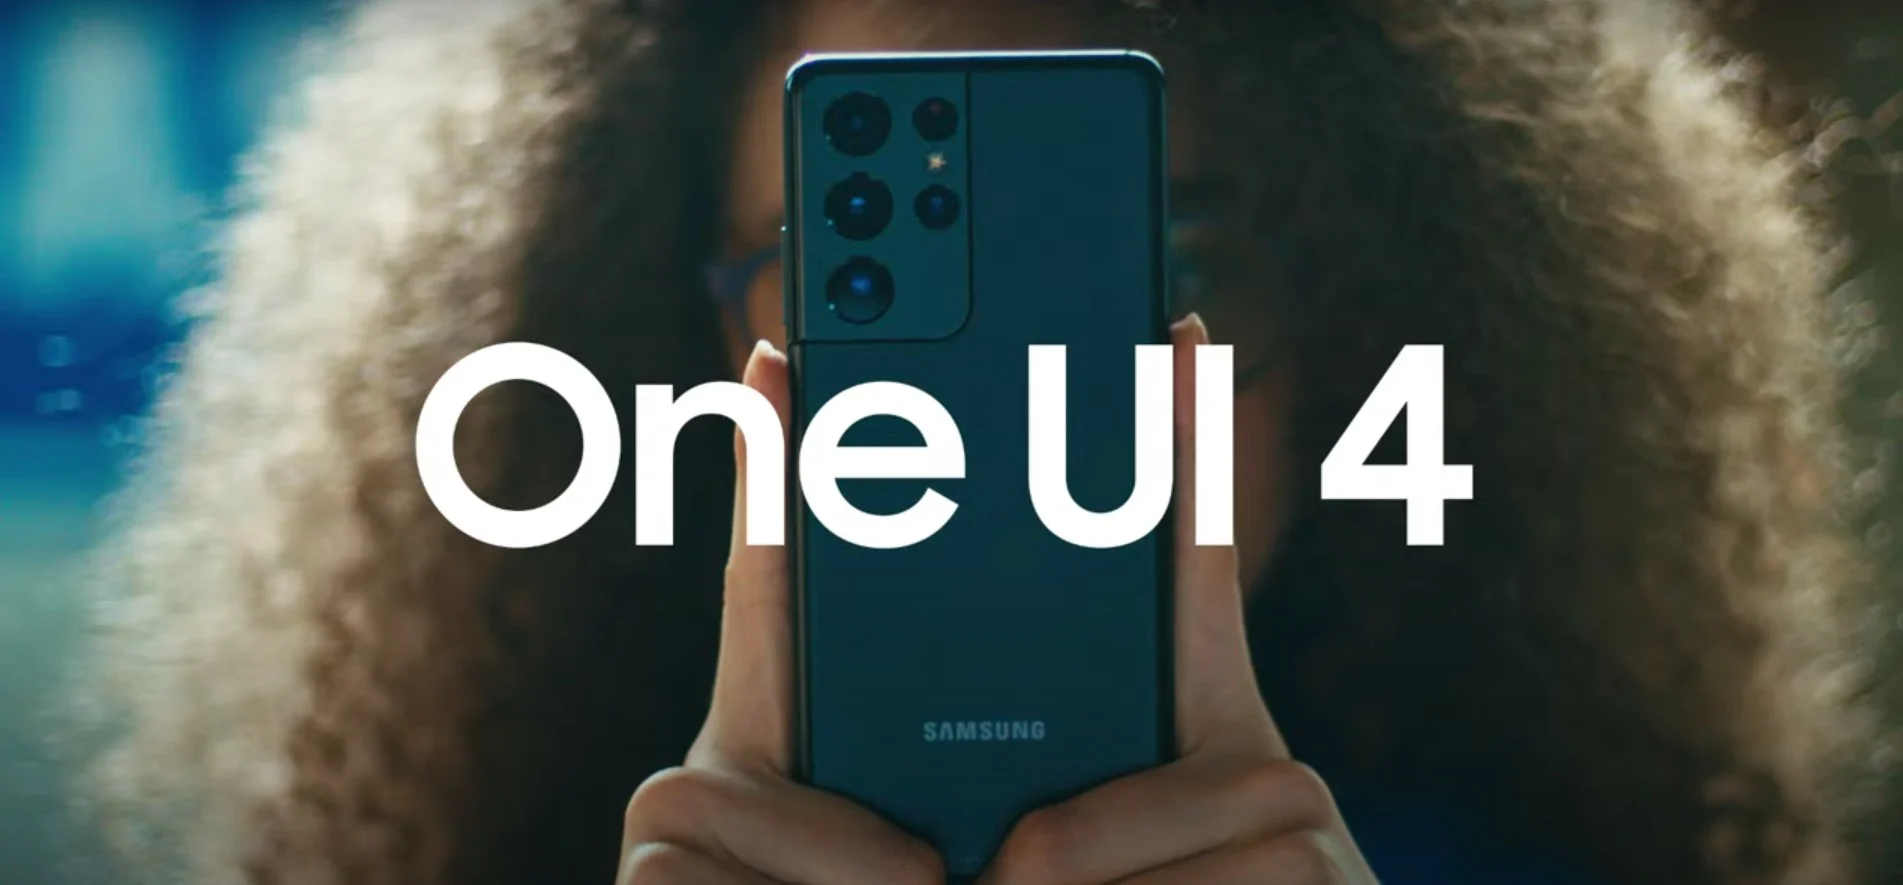 Due smartphone Samsung economici riceveranno una UI 4.0 prima del previsto